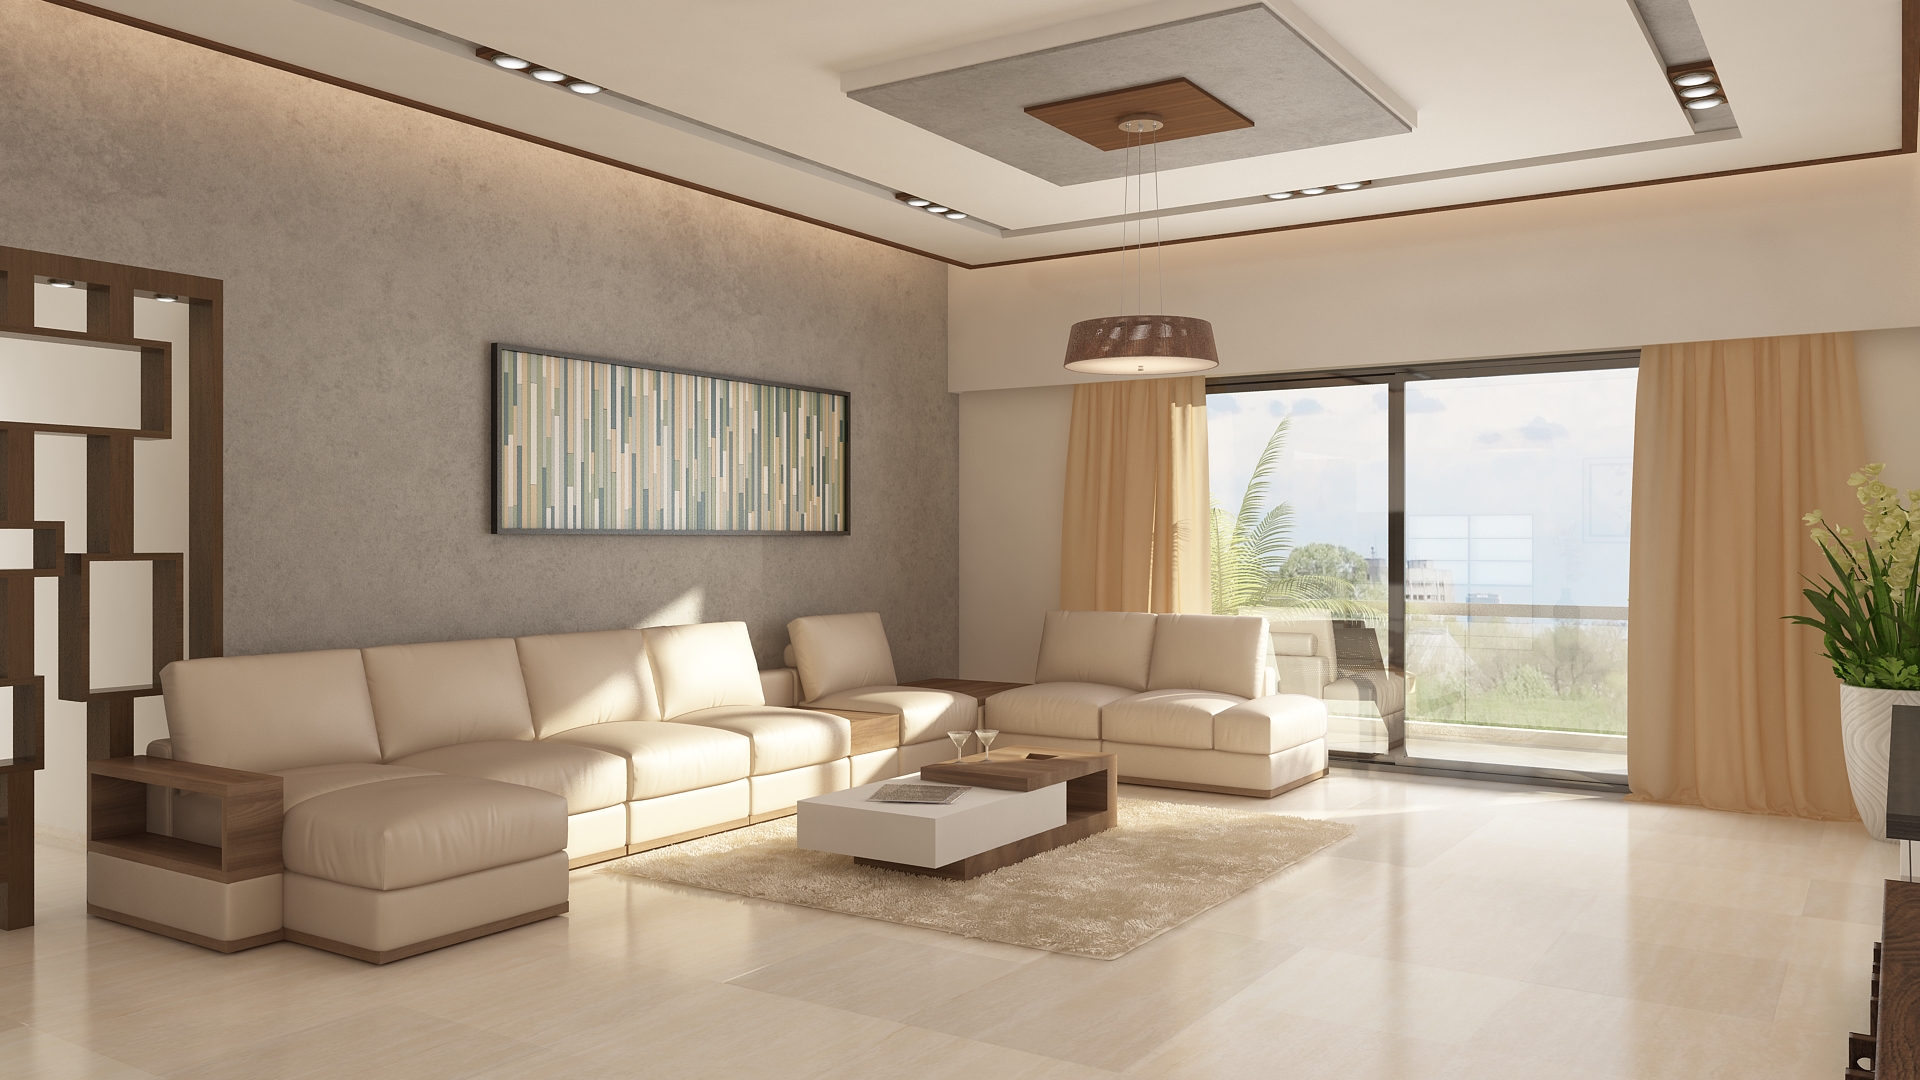 Ghar360 Portfolio 2 Bhk Apartment Interior Design In Jp